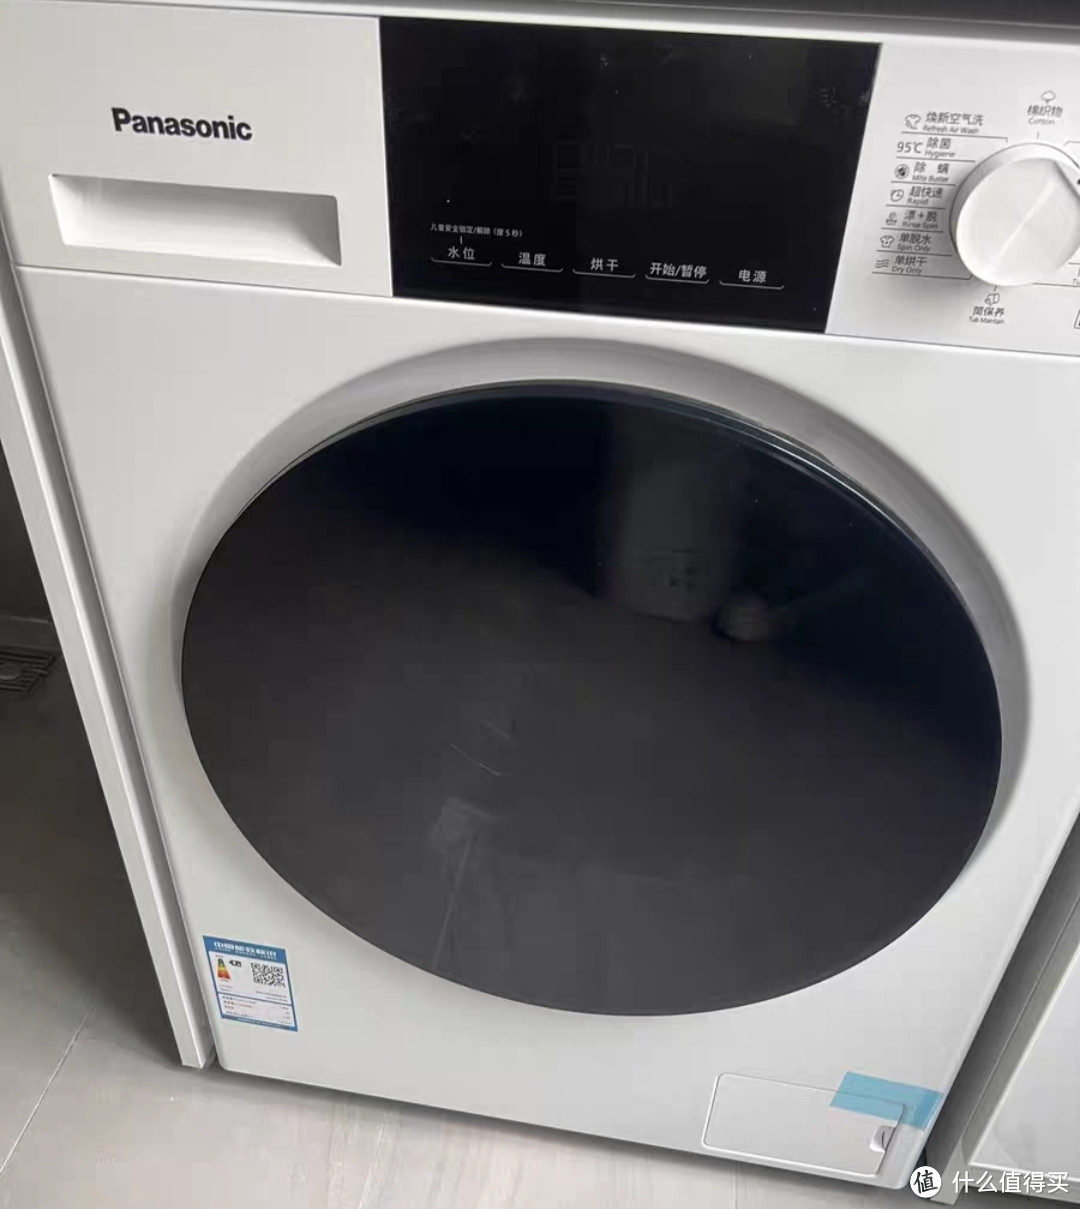 松下全自动10公斤家用洗烘一体BLDC变频滚筒洗衣机是一款高效实用的家电产品。